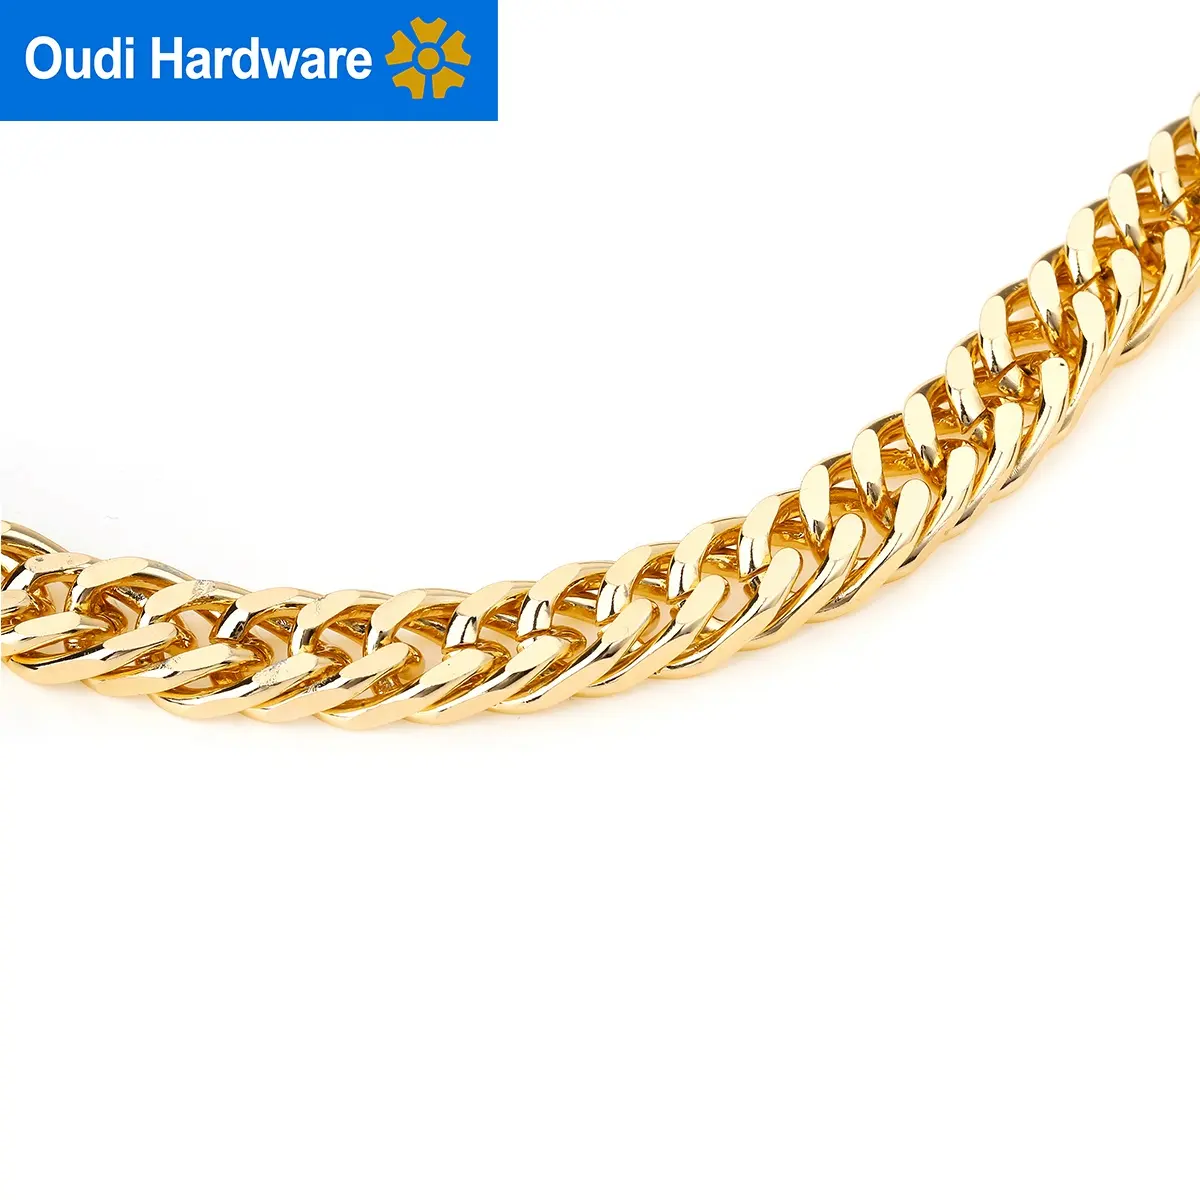 Özelleştirmek işık altın Metal zincir kolu lüks alüminyum zincir parçaları ve aksesuarları için Metal çanta zinciri çanta